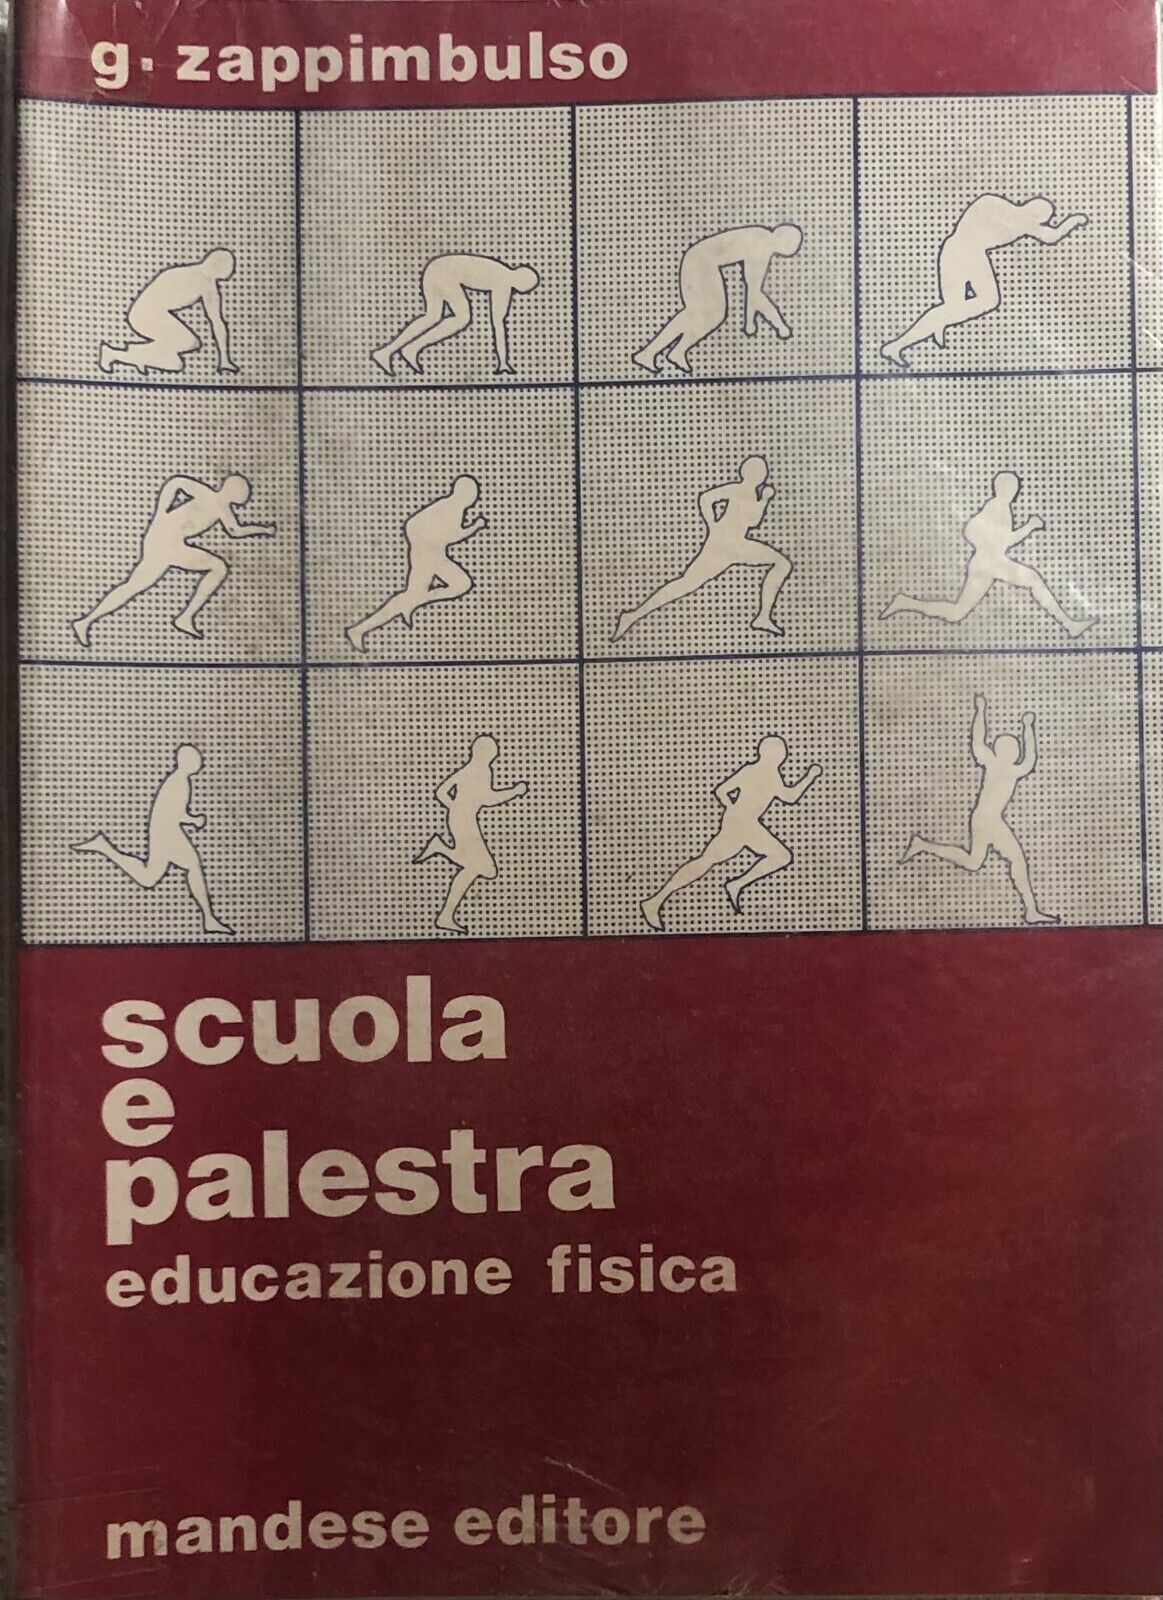 Scuola e palestra di G. Zappimbulso,  1982,  Mandese Editore